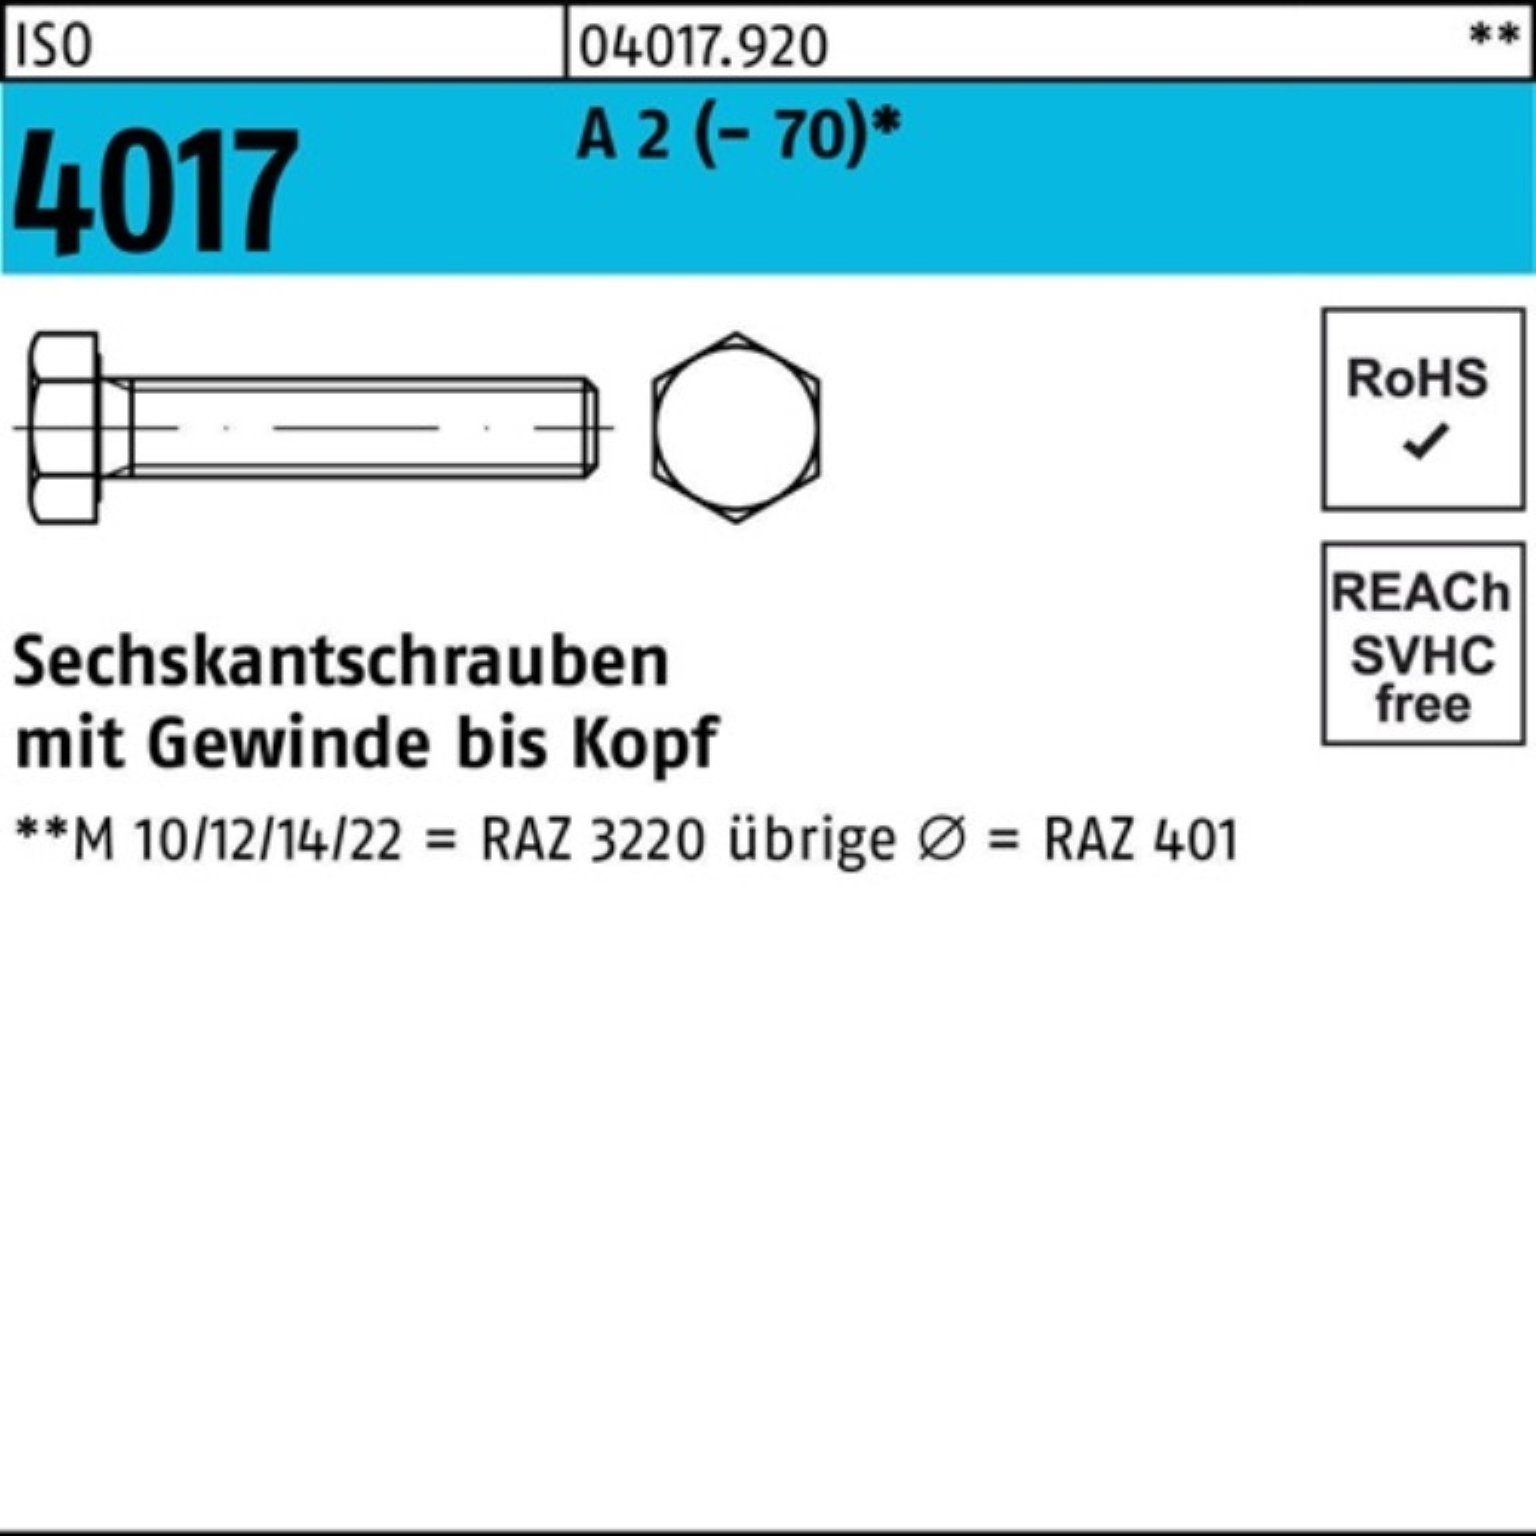 Bufab Sechskantschraube 100er Pack Sechskantschraube ISO 4017 VG M4x 14 A 2 (70) 100 Stück